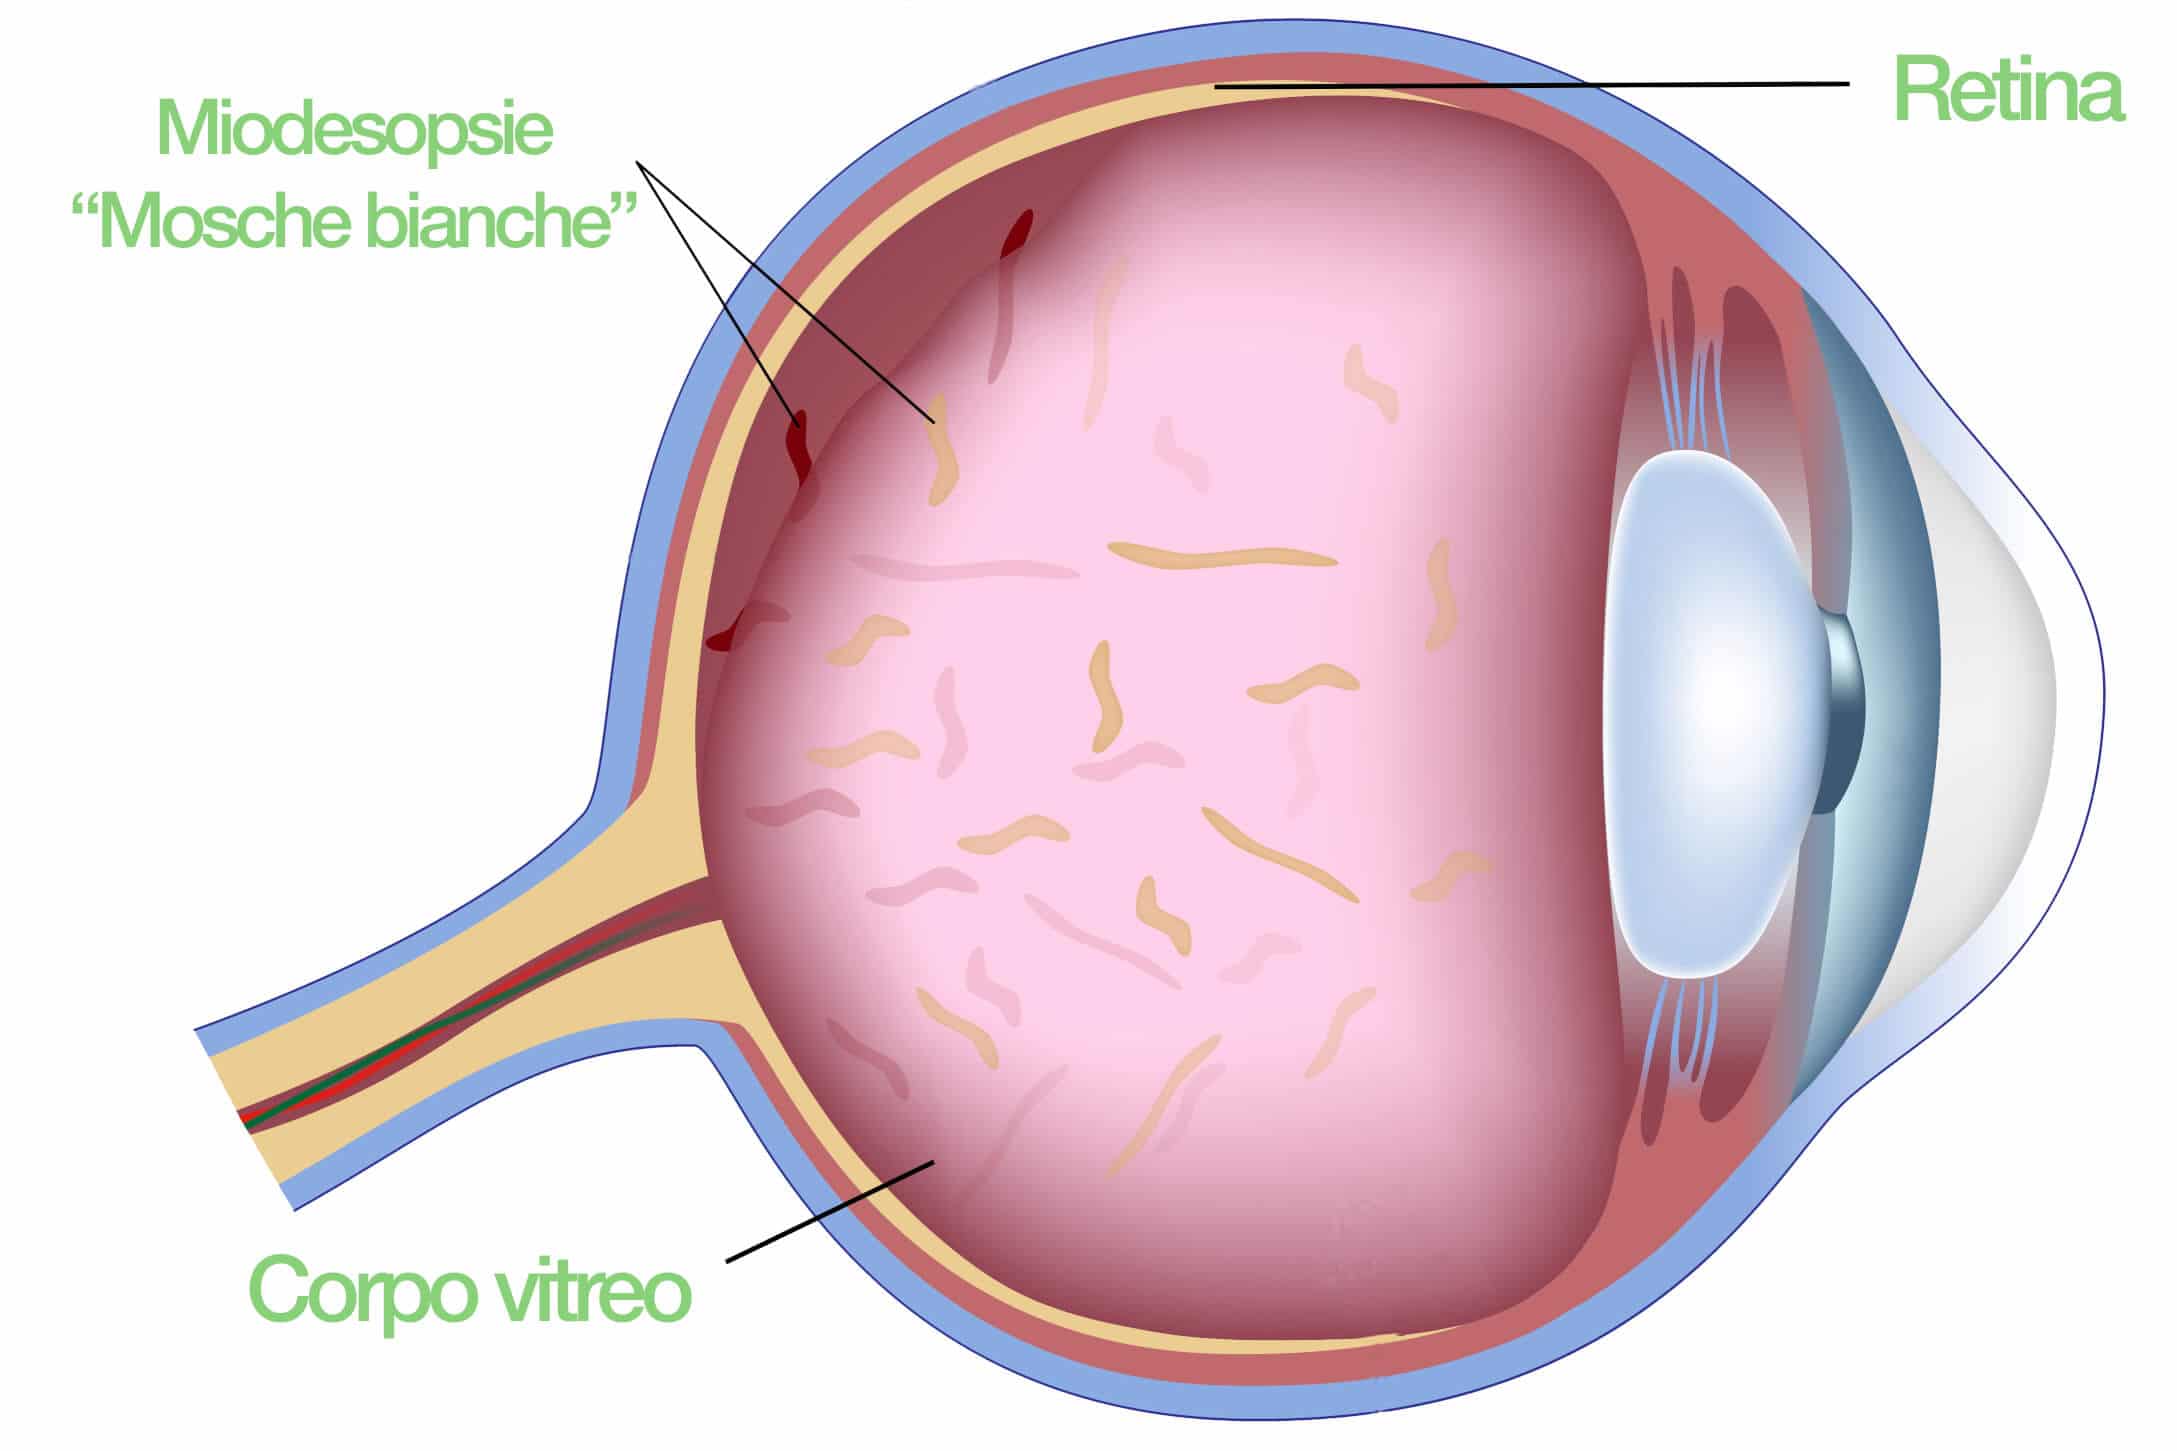 occhio - Vitrolisi - miodesposie